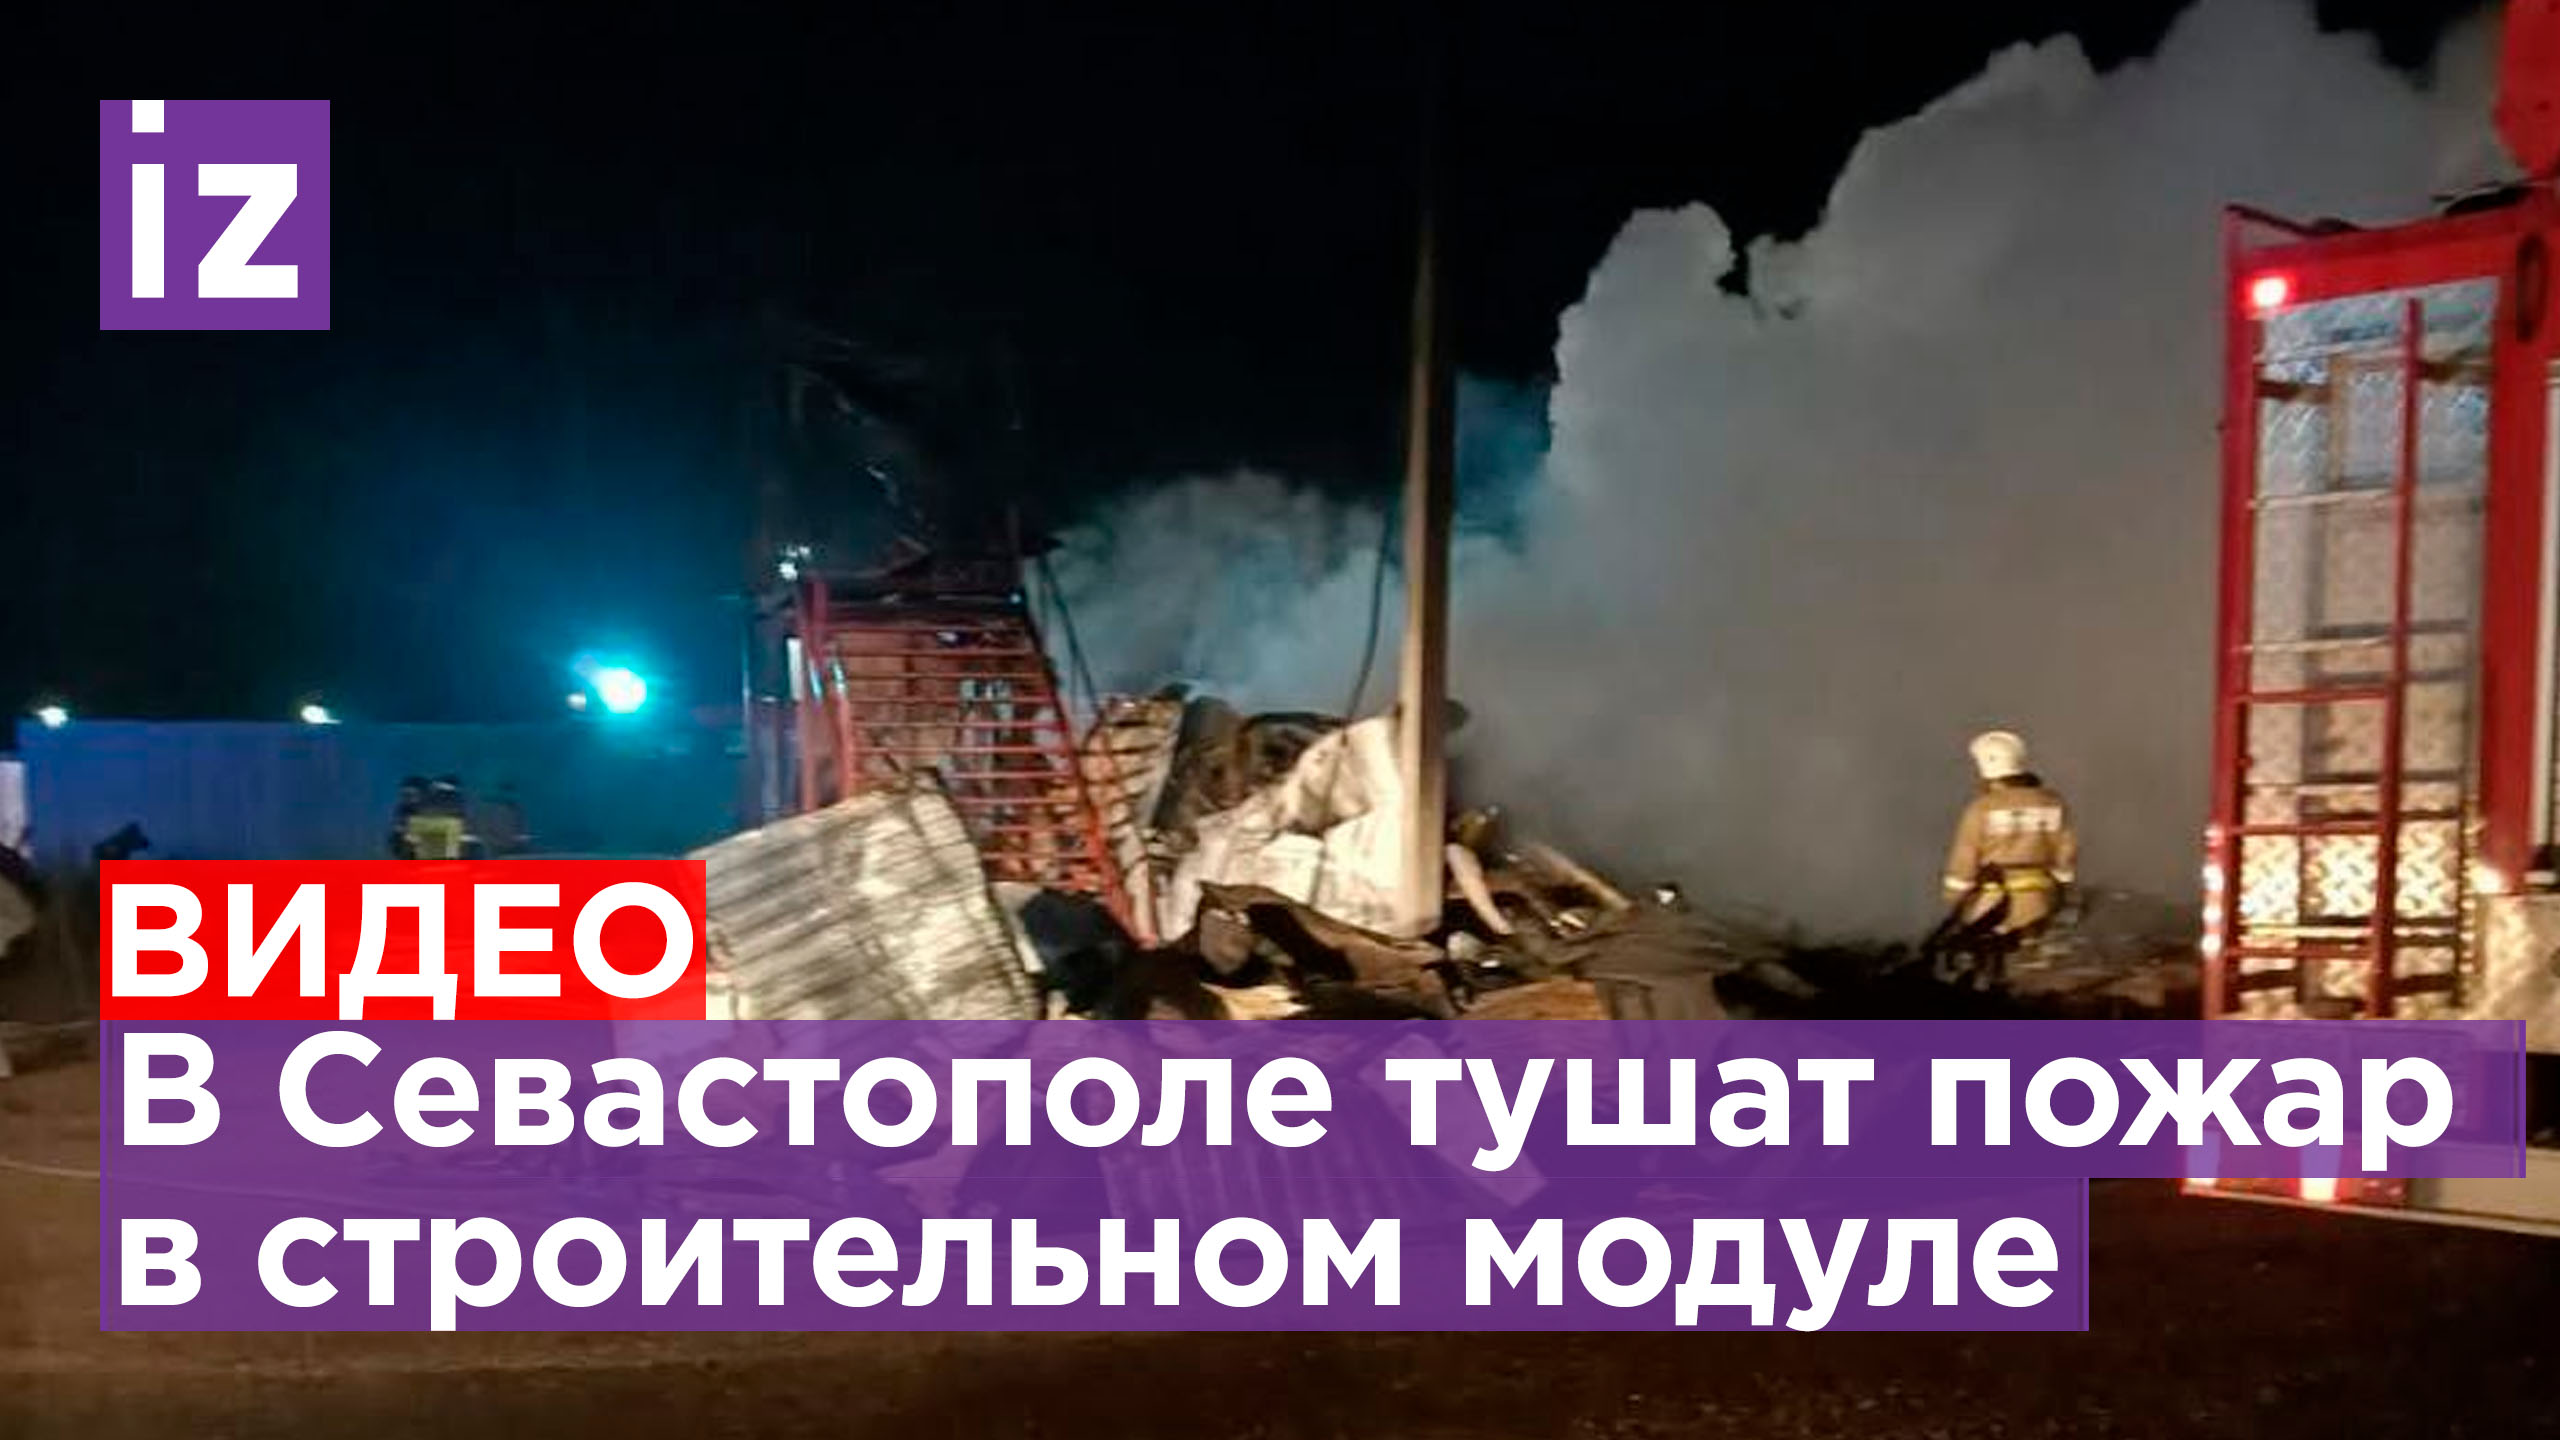 Шесть человек погибли и двое пострадали при пожаре в строительном модуле в Севастополе / Известия